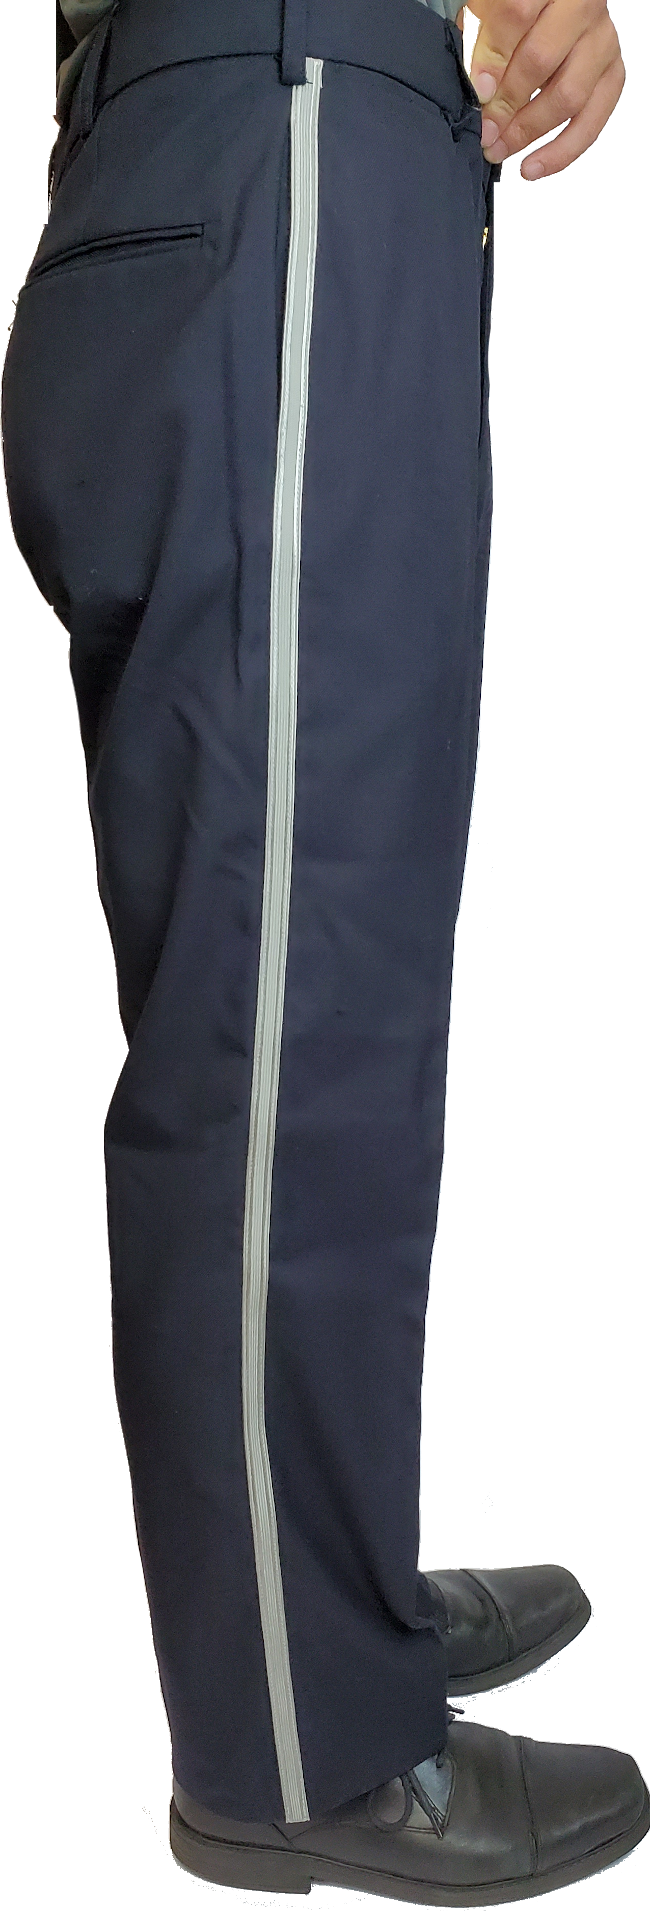 Blauer - 8650 - 4-Pocket Polyester Pants - Law Enforcement Uniform Pants